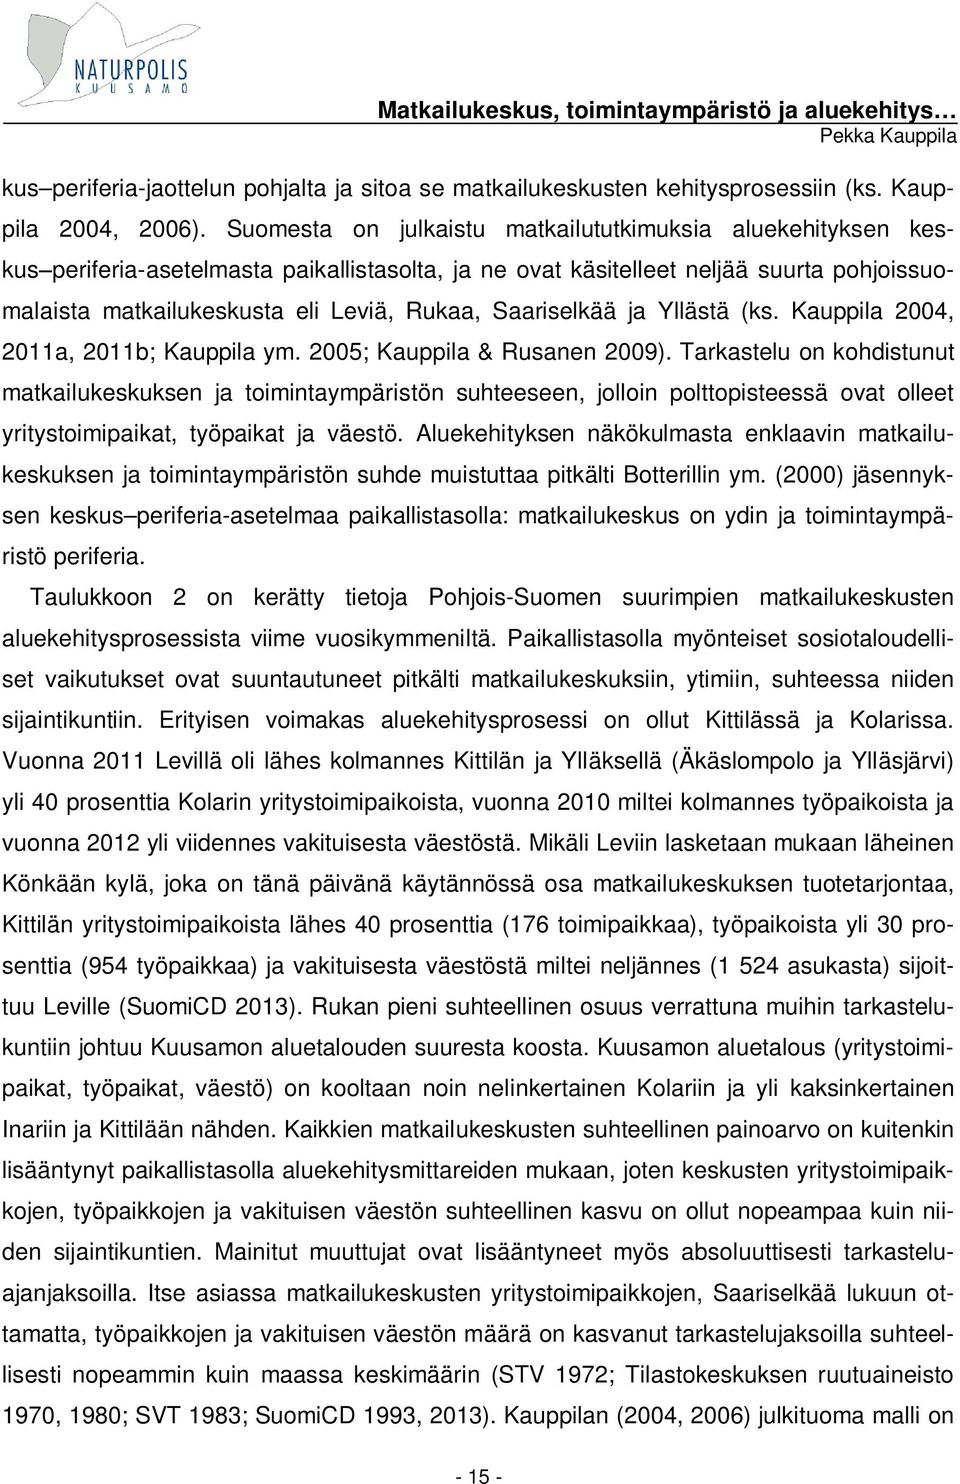 Saariselkää ja Yllästä (ks. Kauppila 2004, 2011a, 2011b; Kauppila ym. 2005; Kauppila & Rusanen 2009).